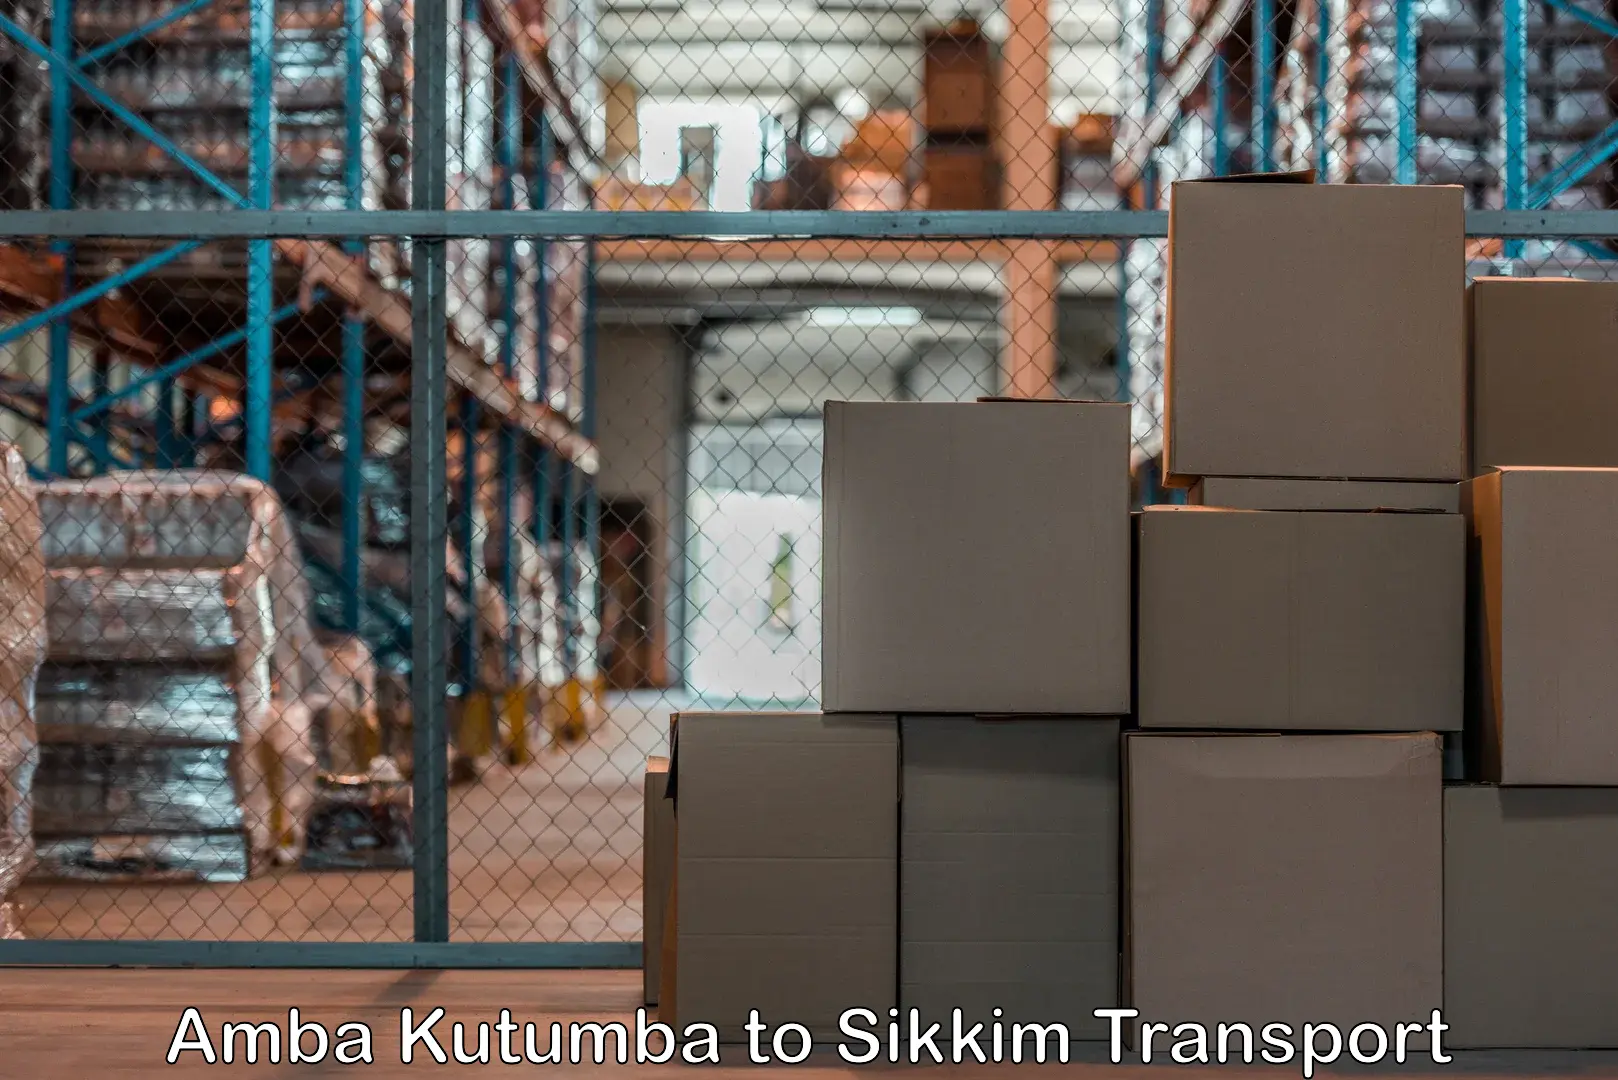 Container transport service Amba Kutumba to Sikkim